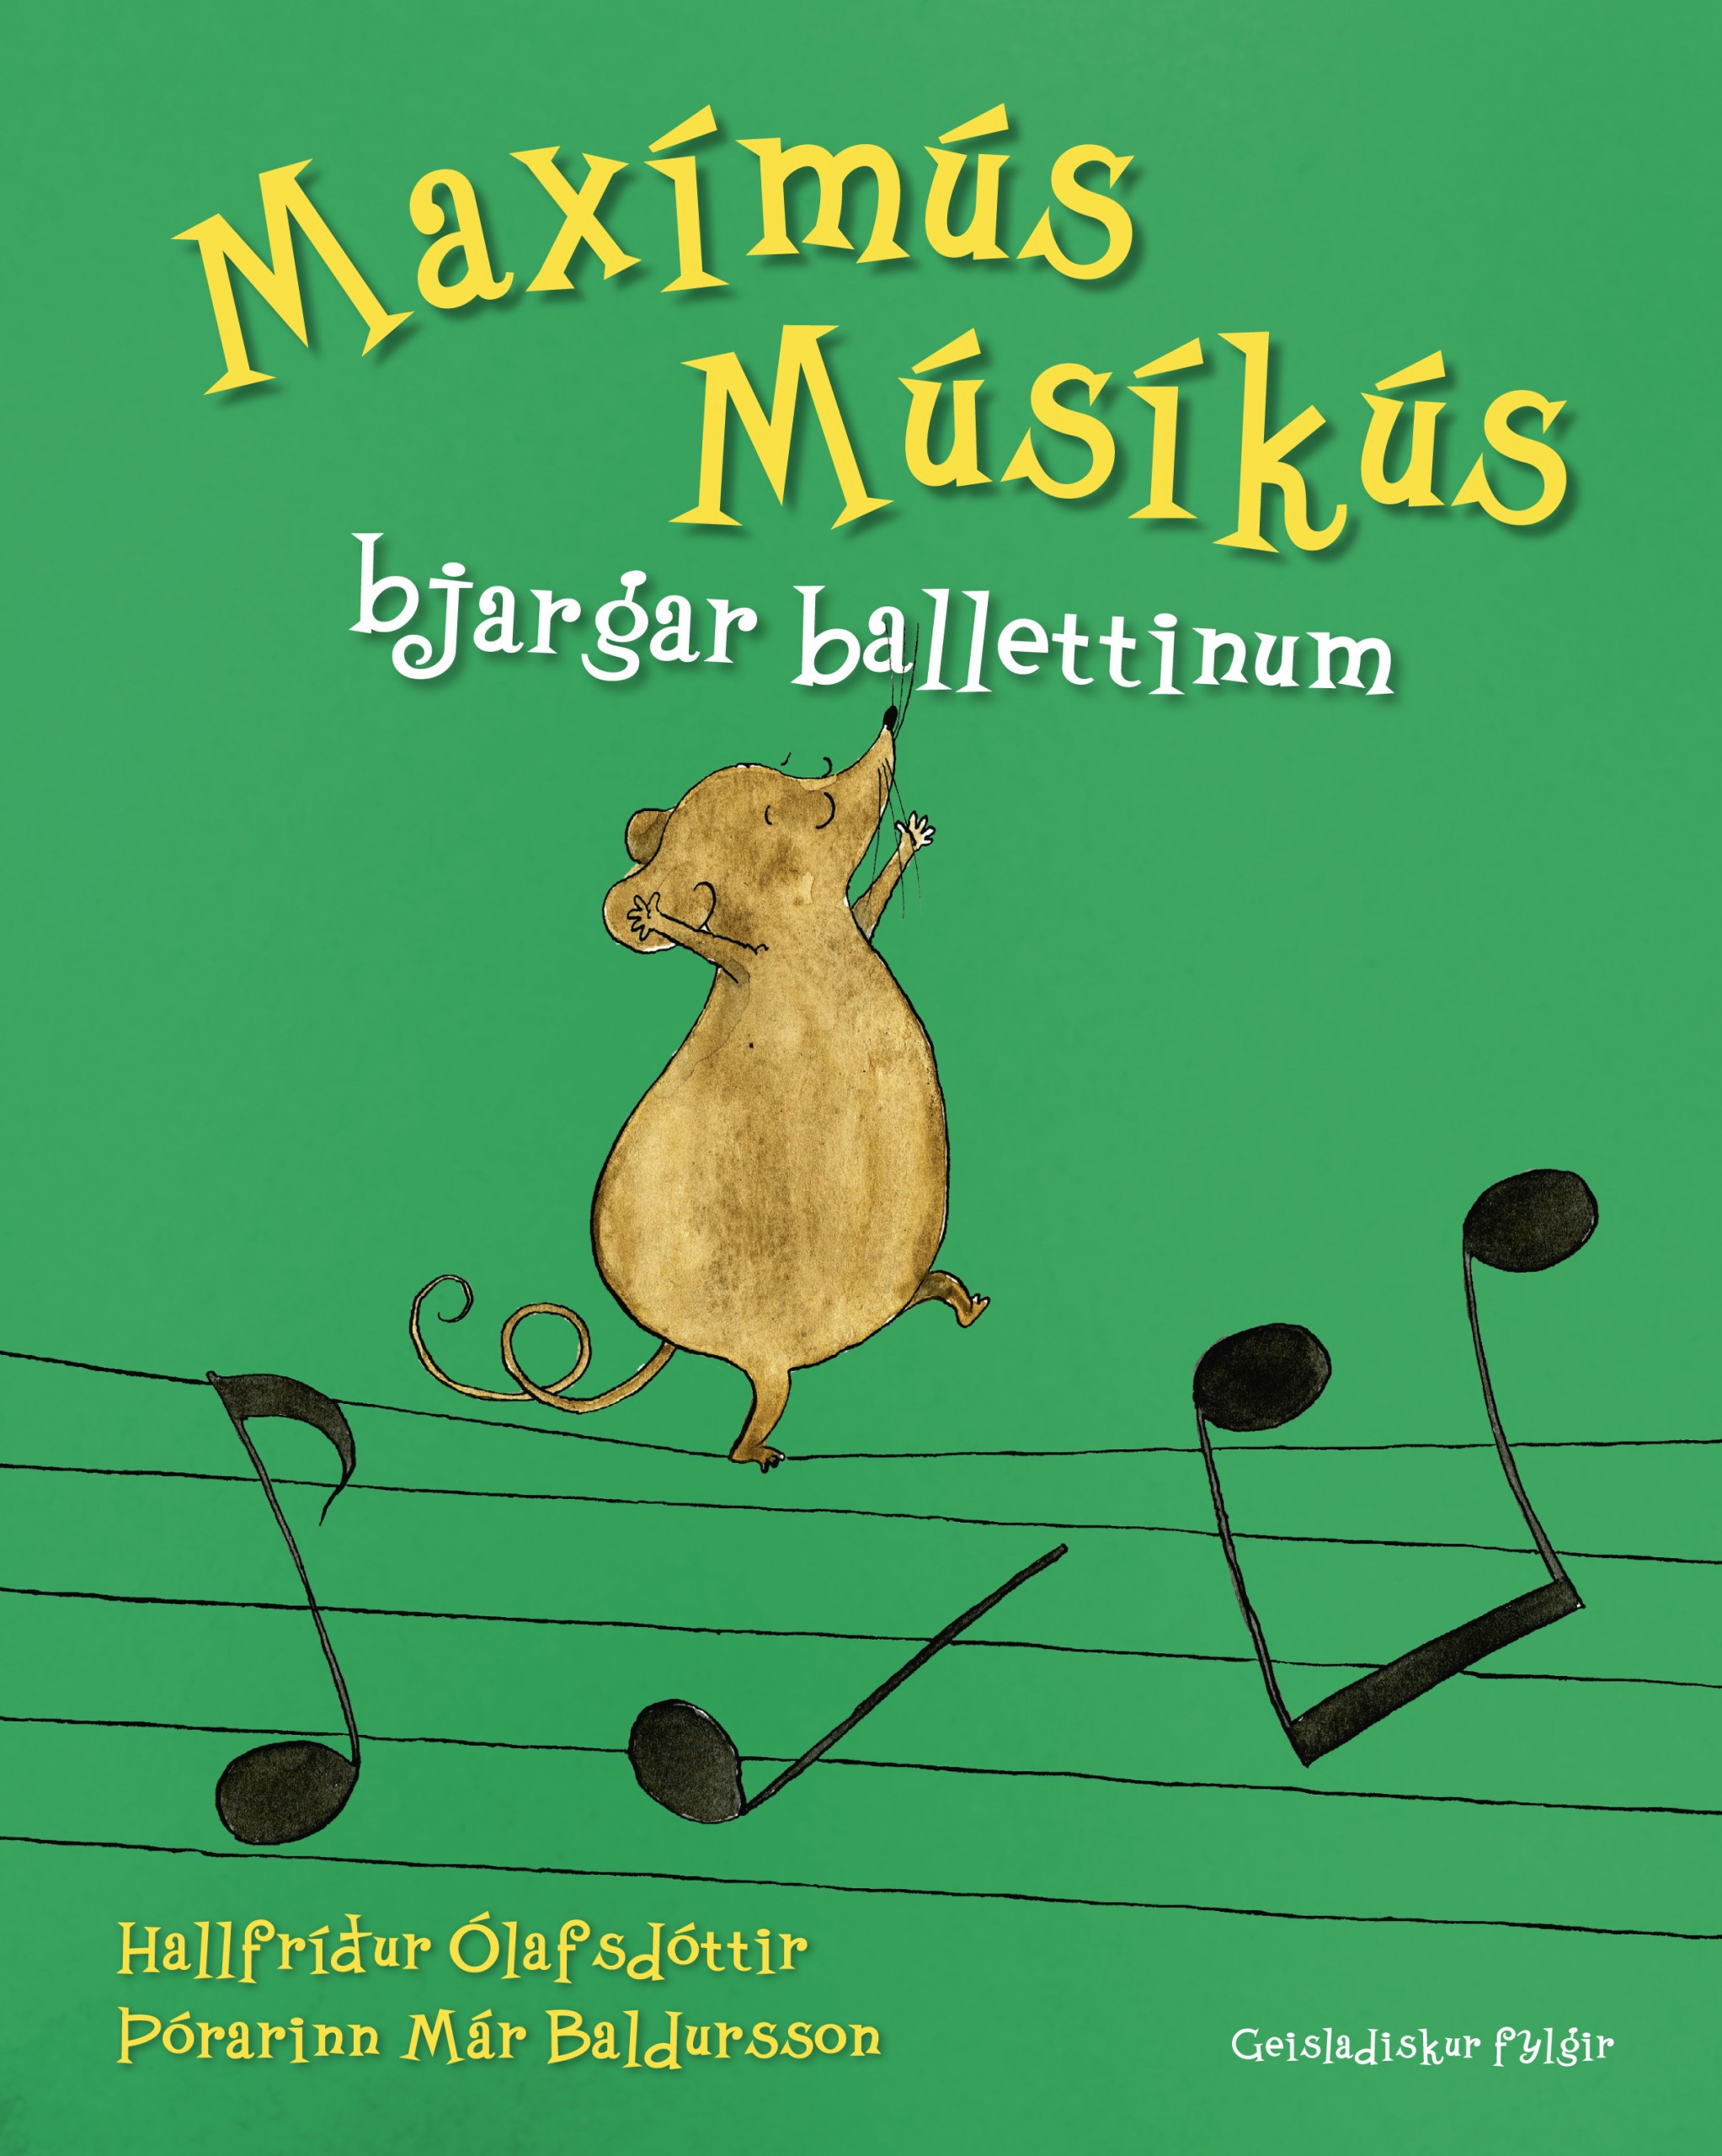 Maximus Musicus Visits the Music School (2010)